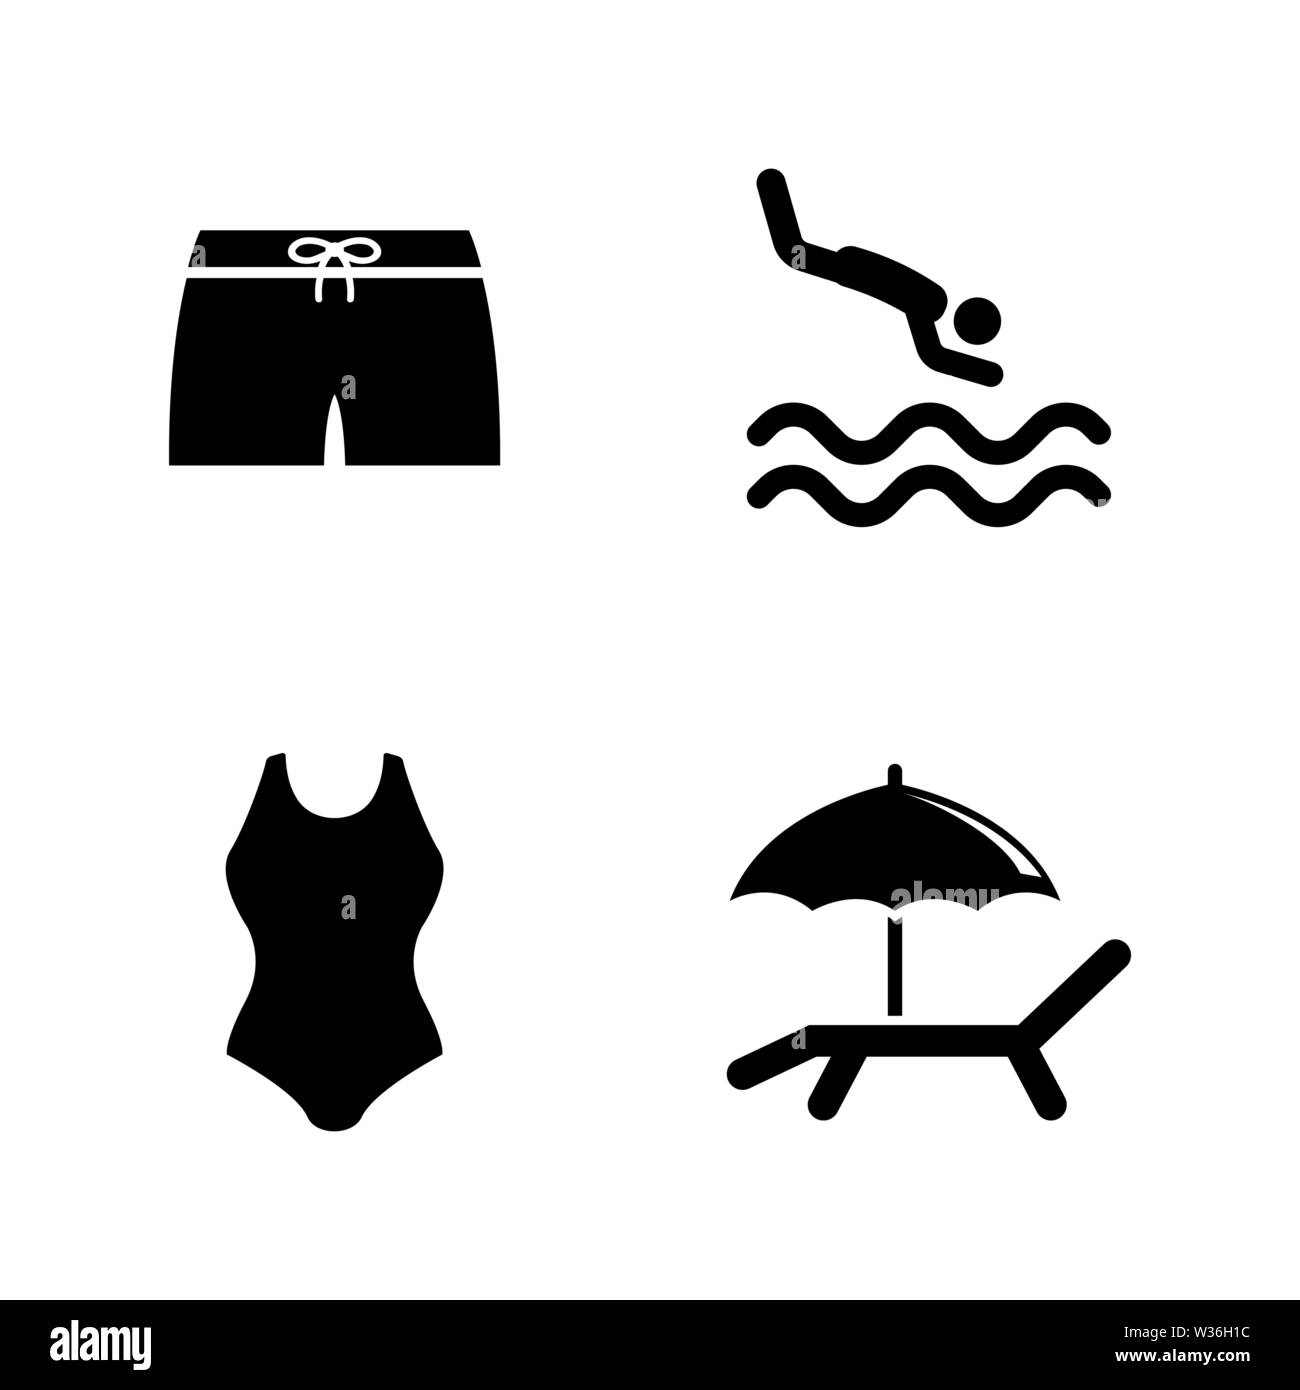 Wasser, Schwimmbad. Einfache ergänzende Vector Icons Set für Video, Mobile Anwendungen, Websites, Print Projekte und ihre Gestaltung. Wasser, Schwimmbad Symbol Bla Stock Vektor